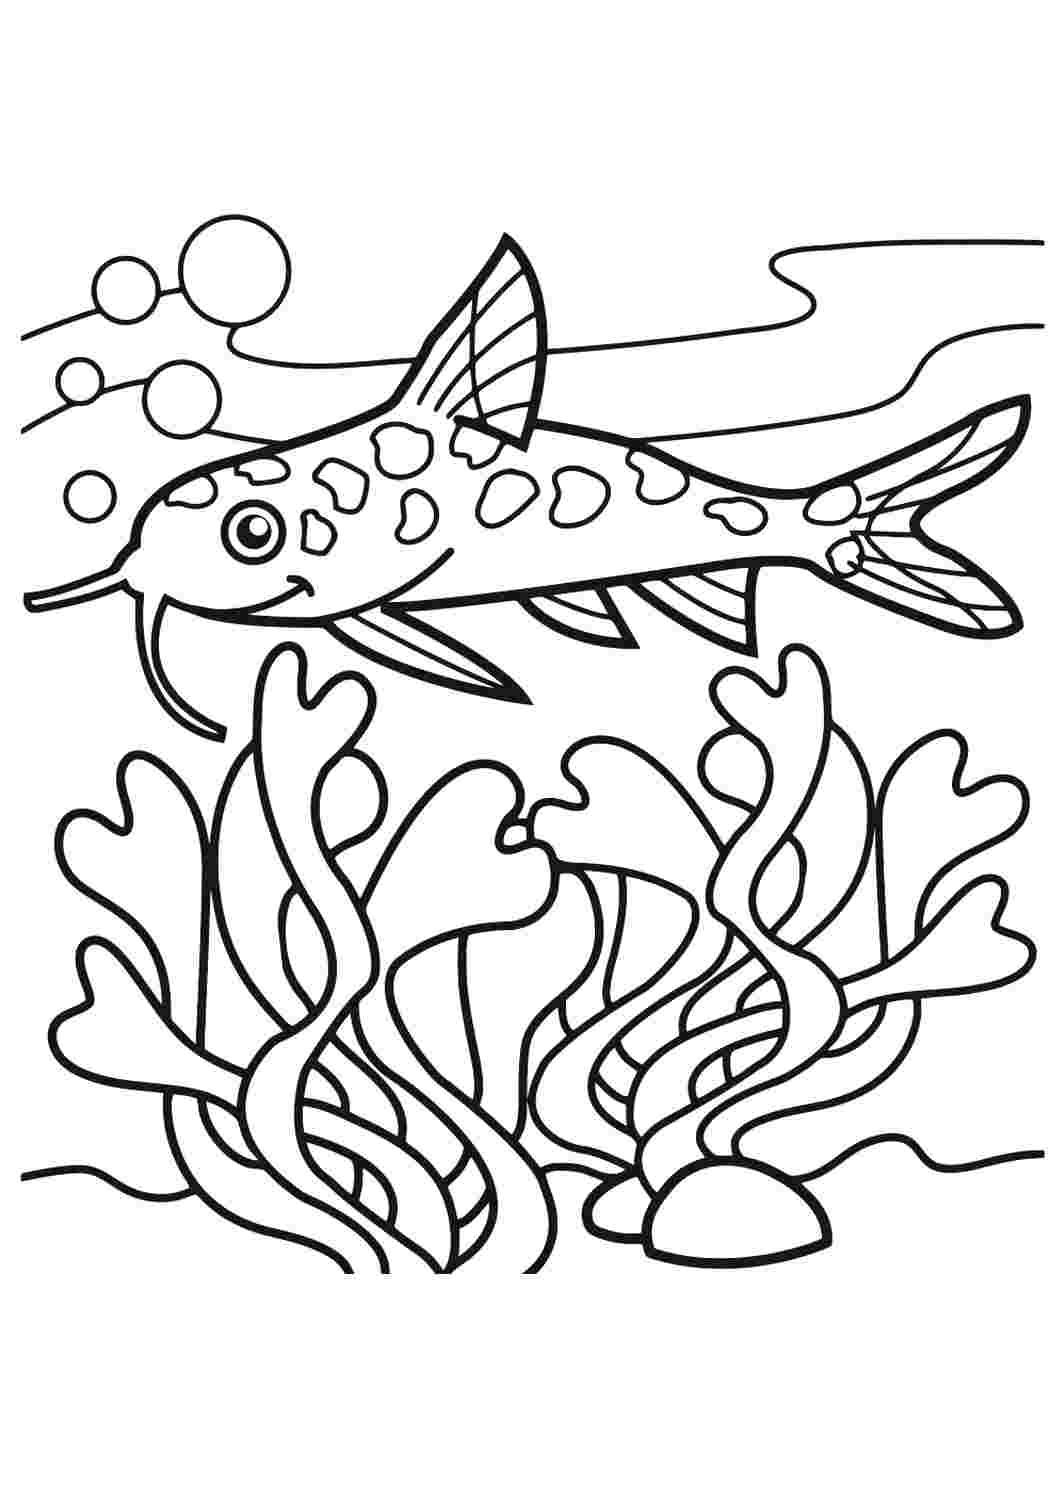 Раскраска рыбки для детей 5 6 лет. Рыбка сомик аквариумный раскраска. Рыба раскраска. Раскраска рыбка. Рыбка раскраска для детей.